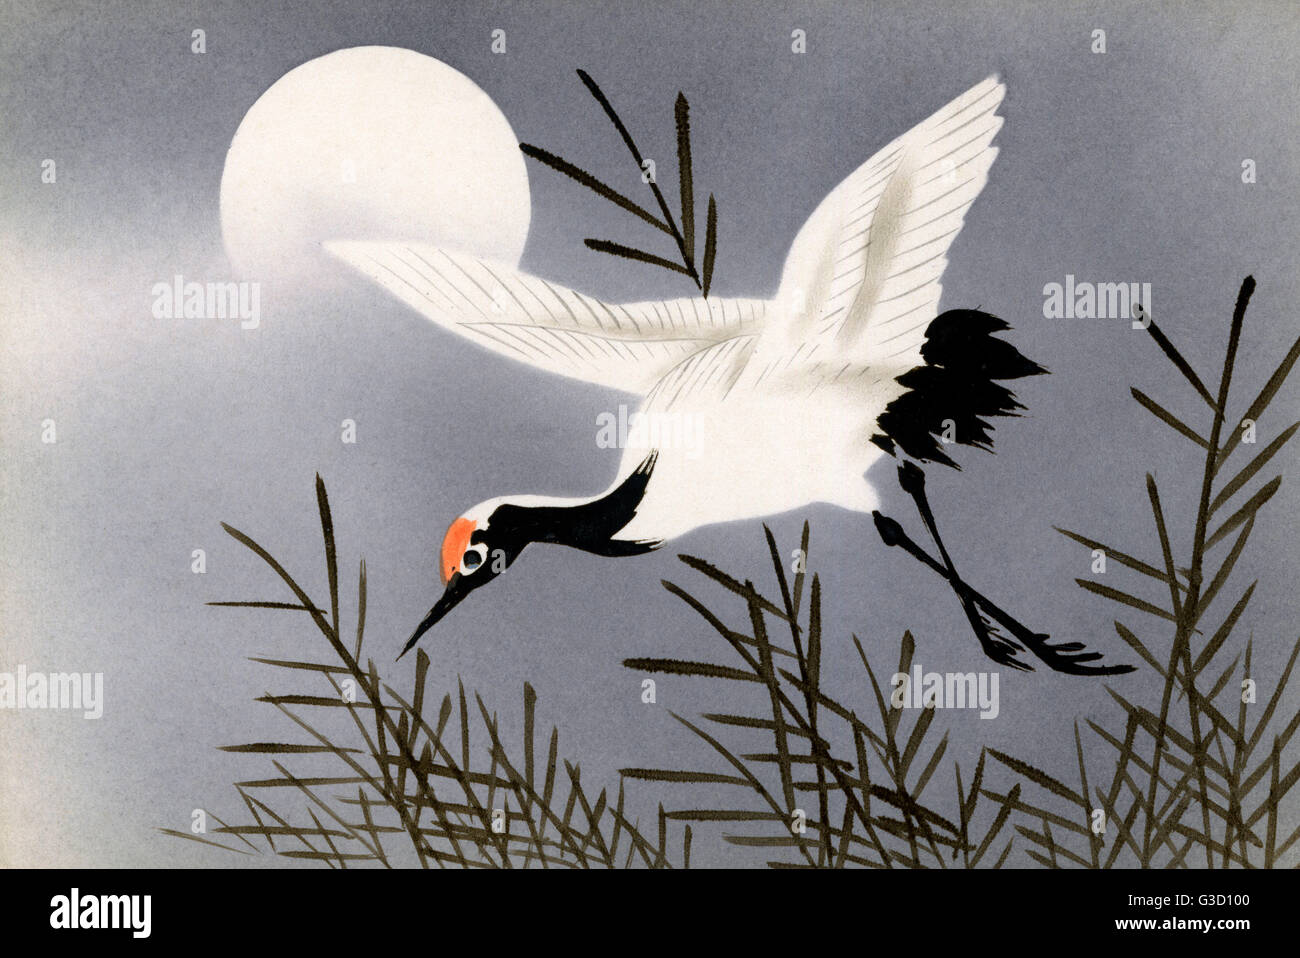 Japanese art postcard - Stork in flight beneath the moon Stock Photo